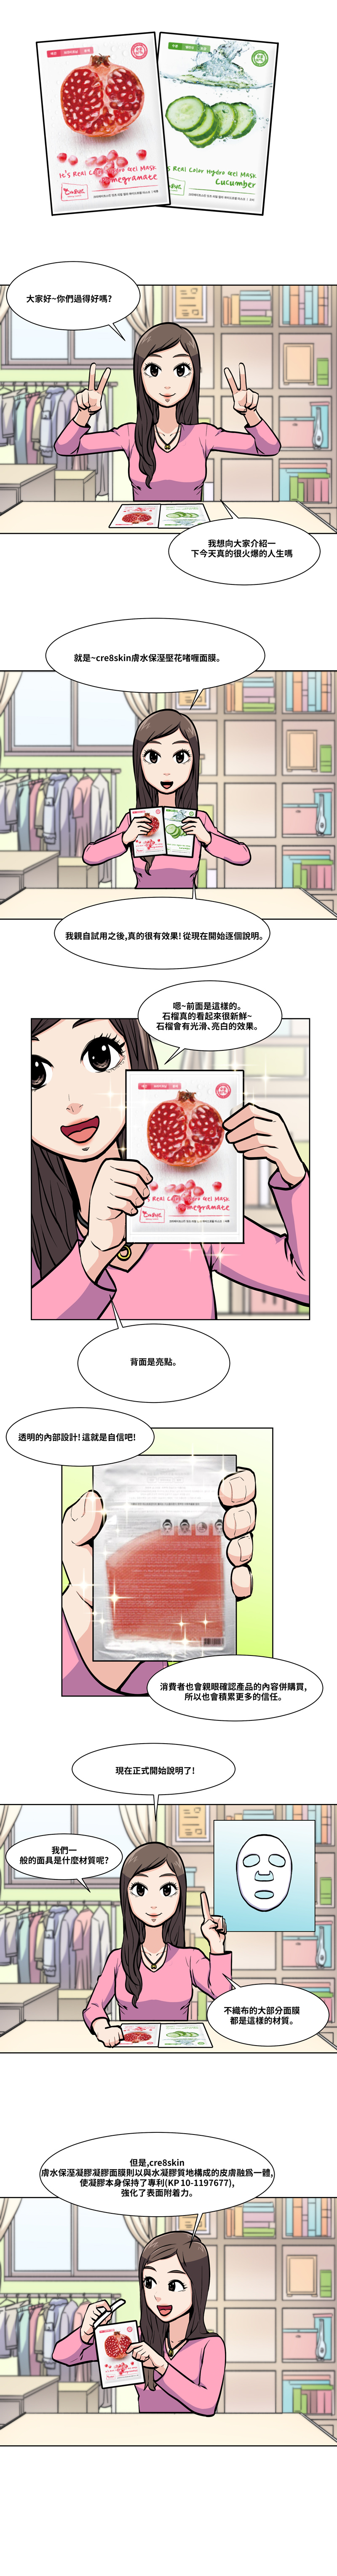 잇츠 리얼 컬러 하이드로겔 마스크 - 중국어, It's real color hydro gel mask webtoon - Chinese